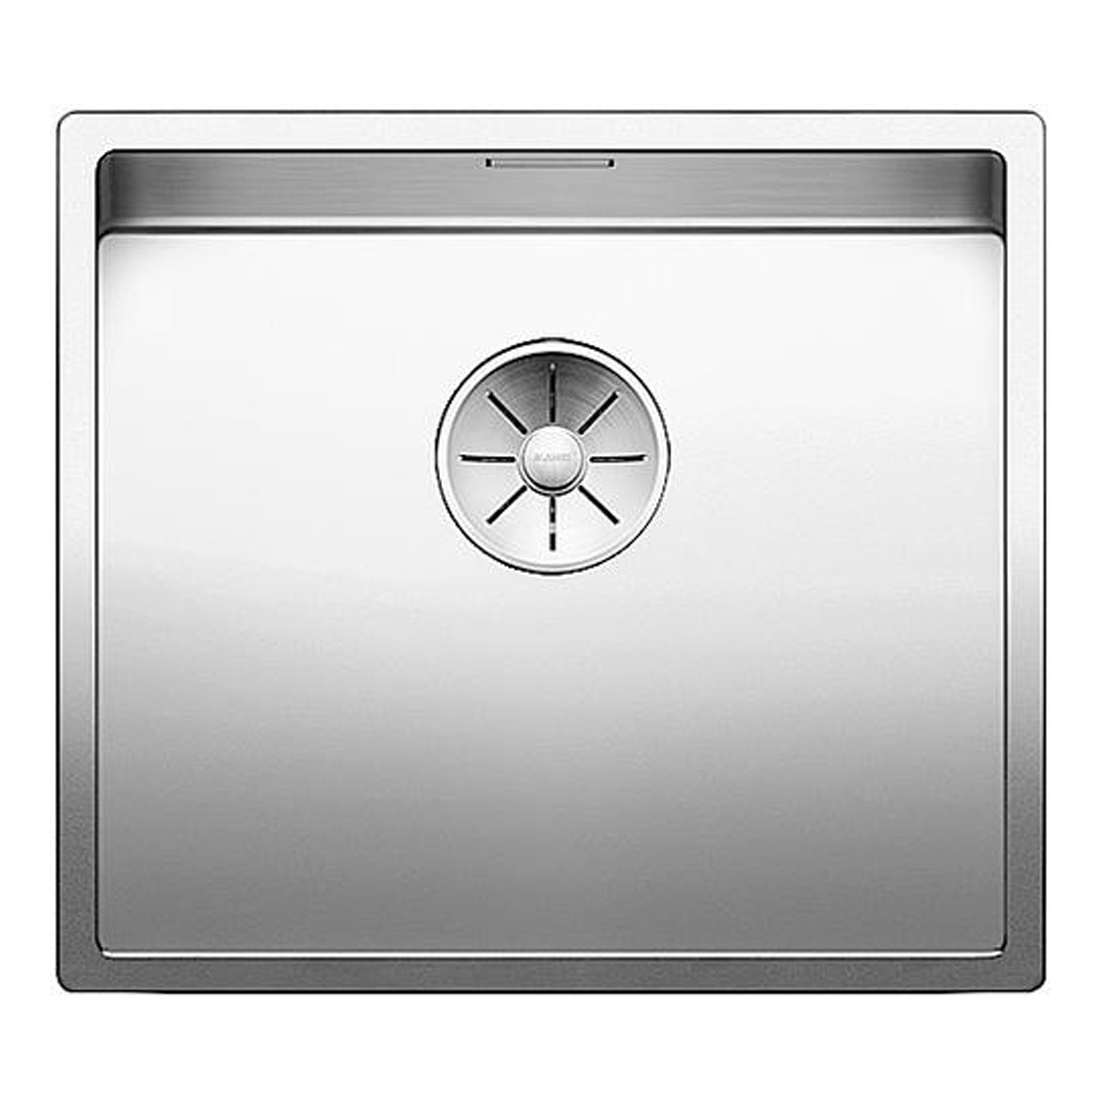 Кухонная мойка Blanco Claron 450-IF зеркальная полировка кухонная мойка blanco claron 400 if a зеркальная полировка